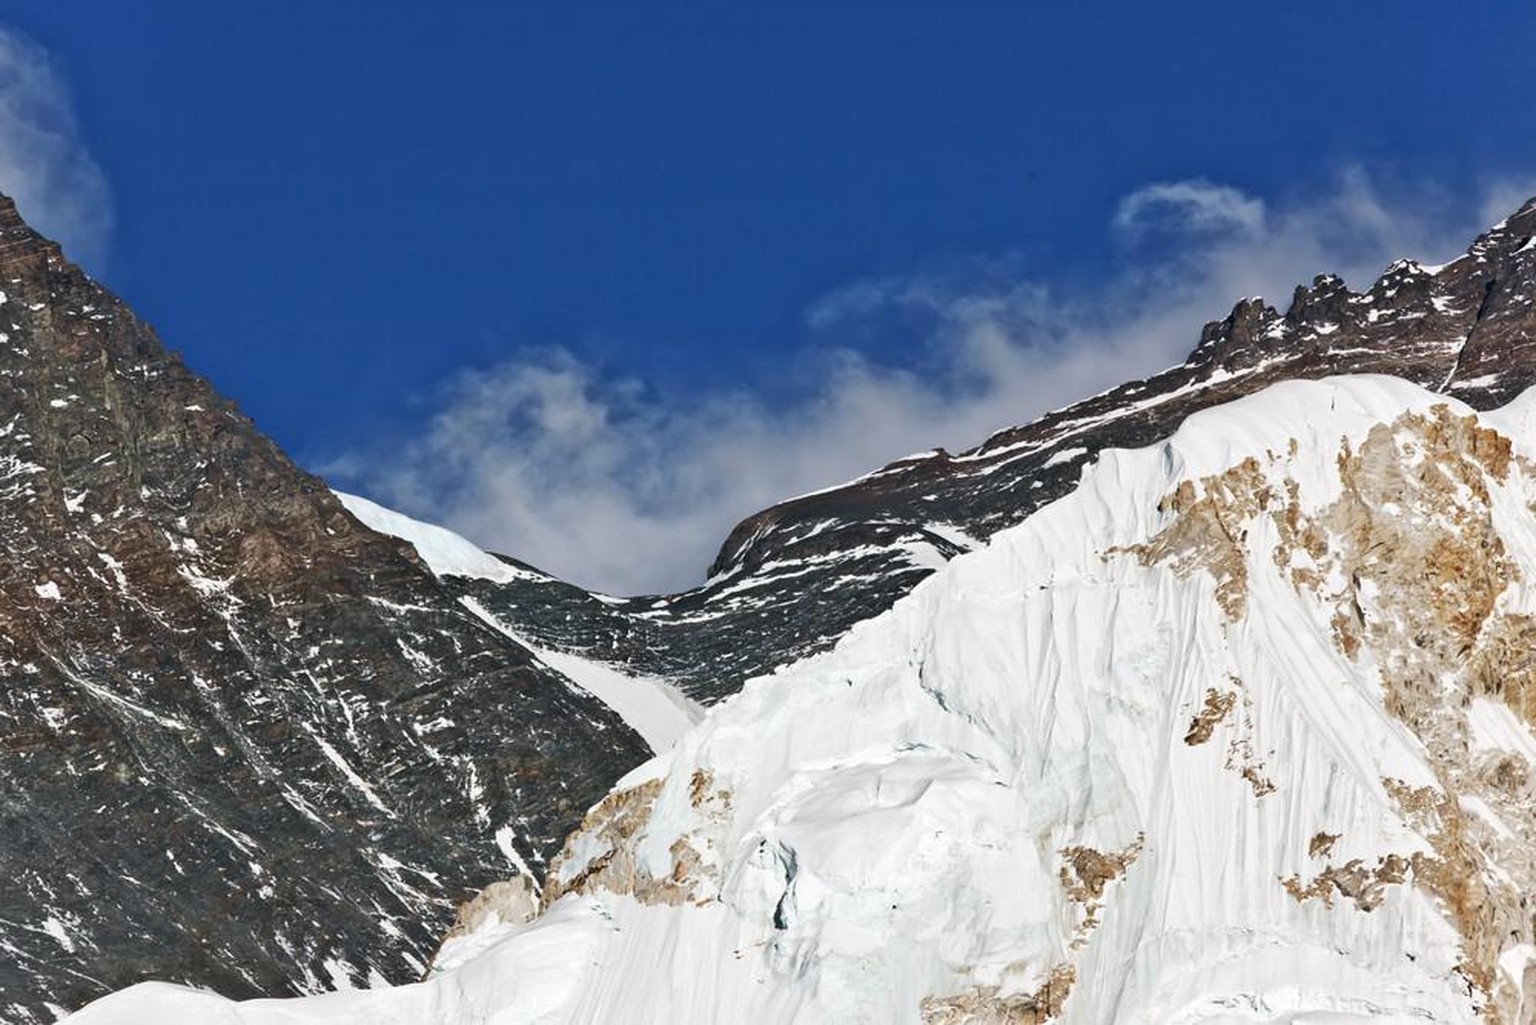 Der South Col am Mount Everest verliert jedes Jahr 2 Meter an Dicke.